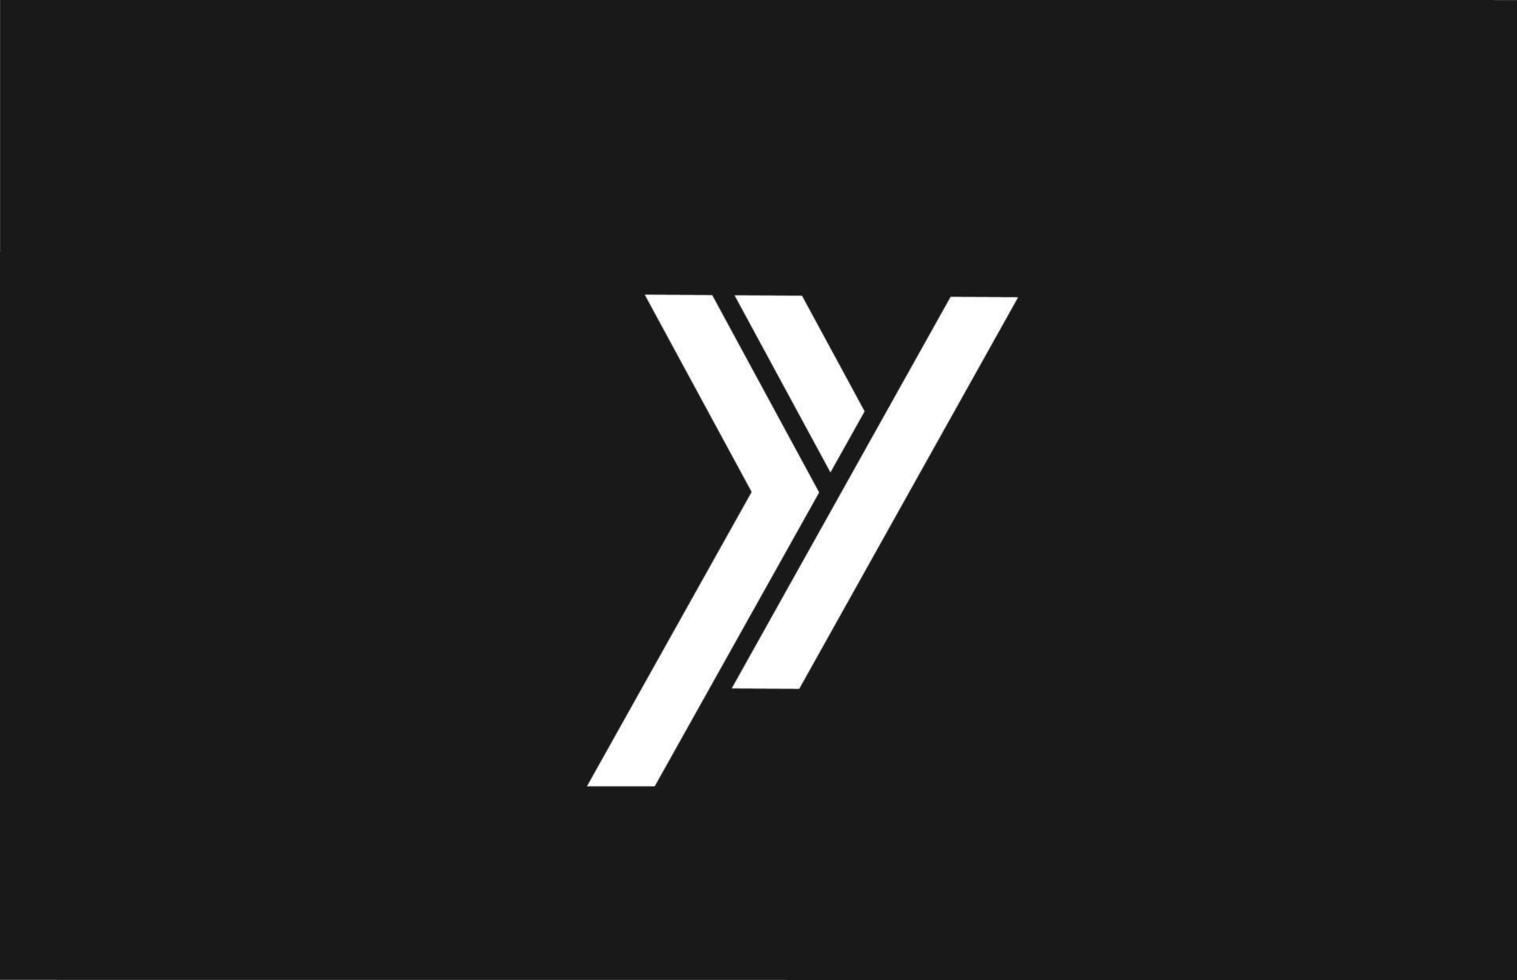 y alfabet letter pictogram logo met lijn ontwerp. creatieve sjabloon voor zaken en bedrijven in wit en zwart vector